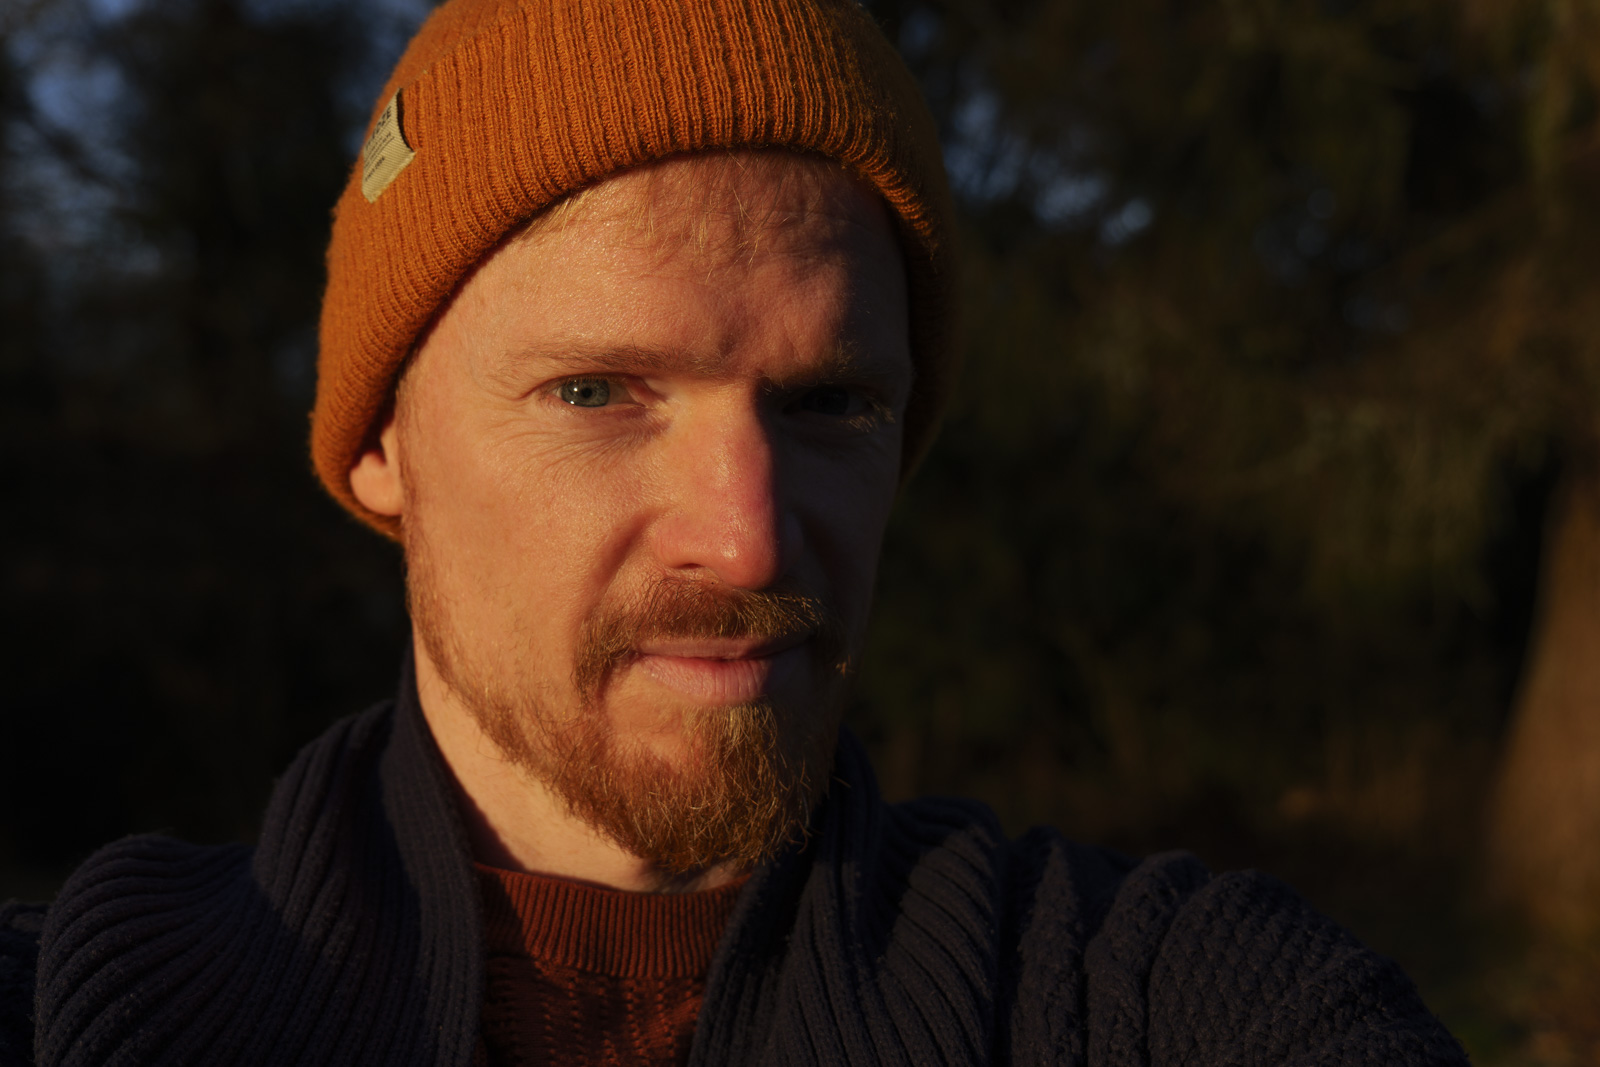 Selfie Picture taken with Panasonic S5 II of man in golden hour light